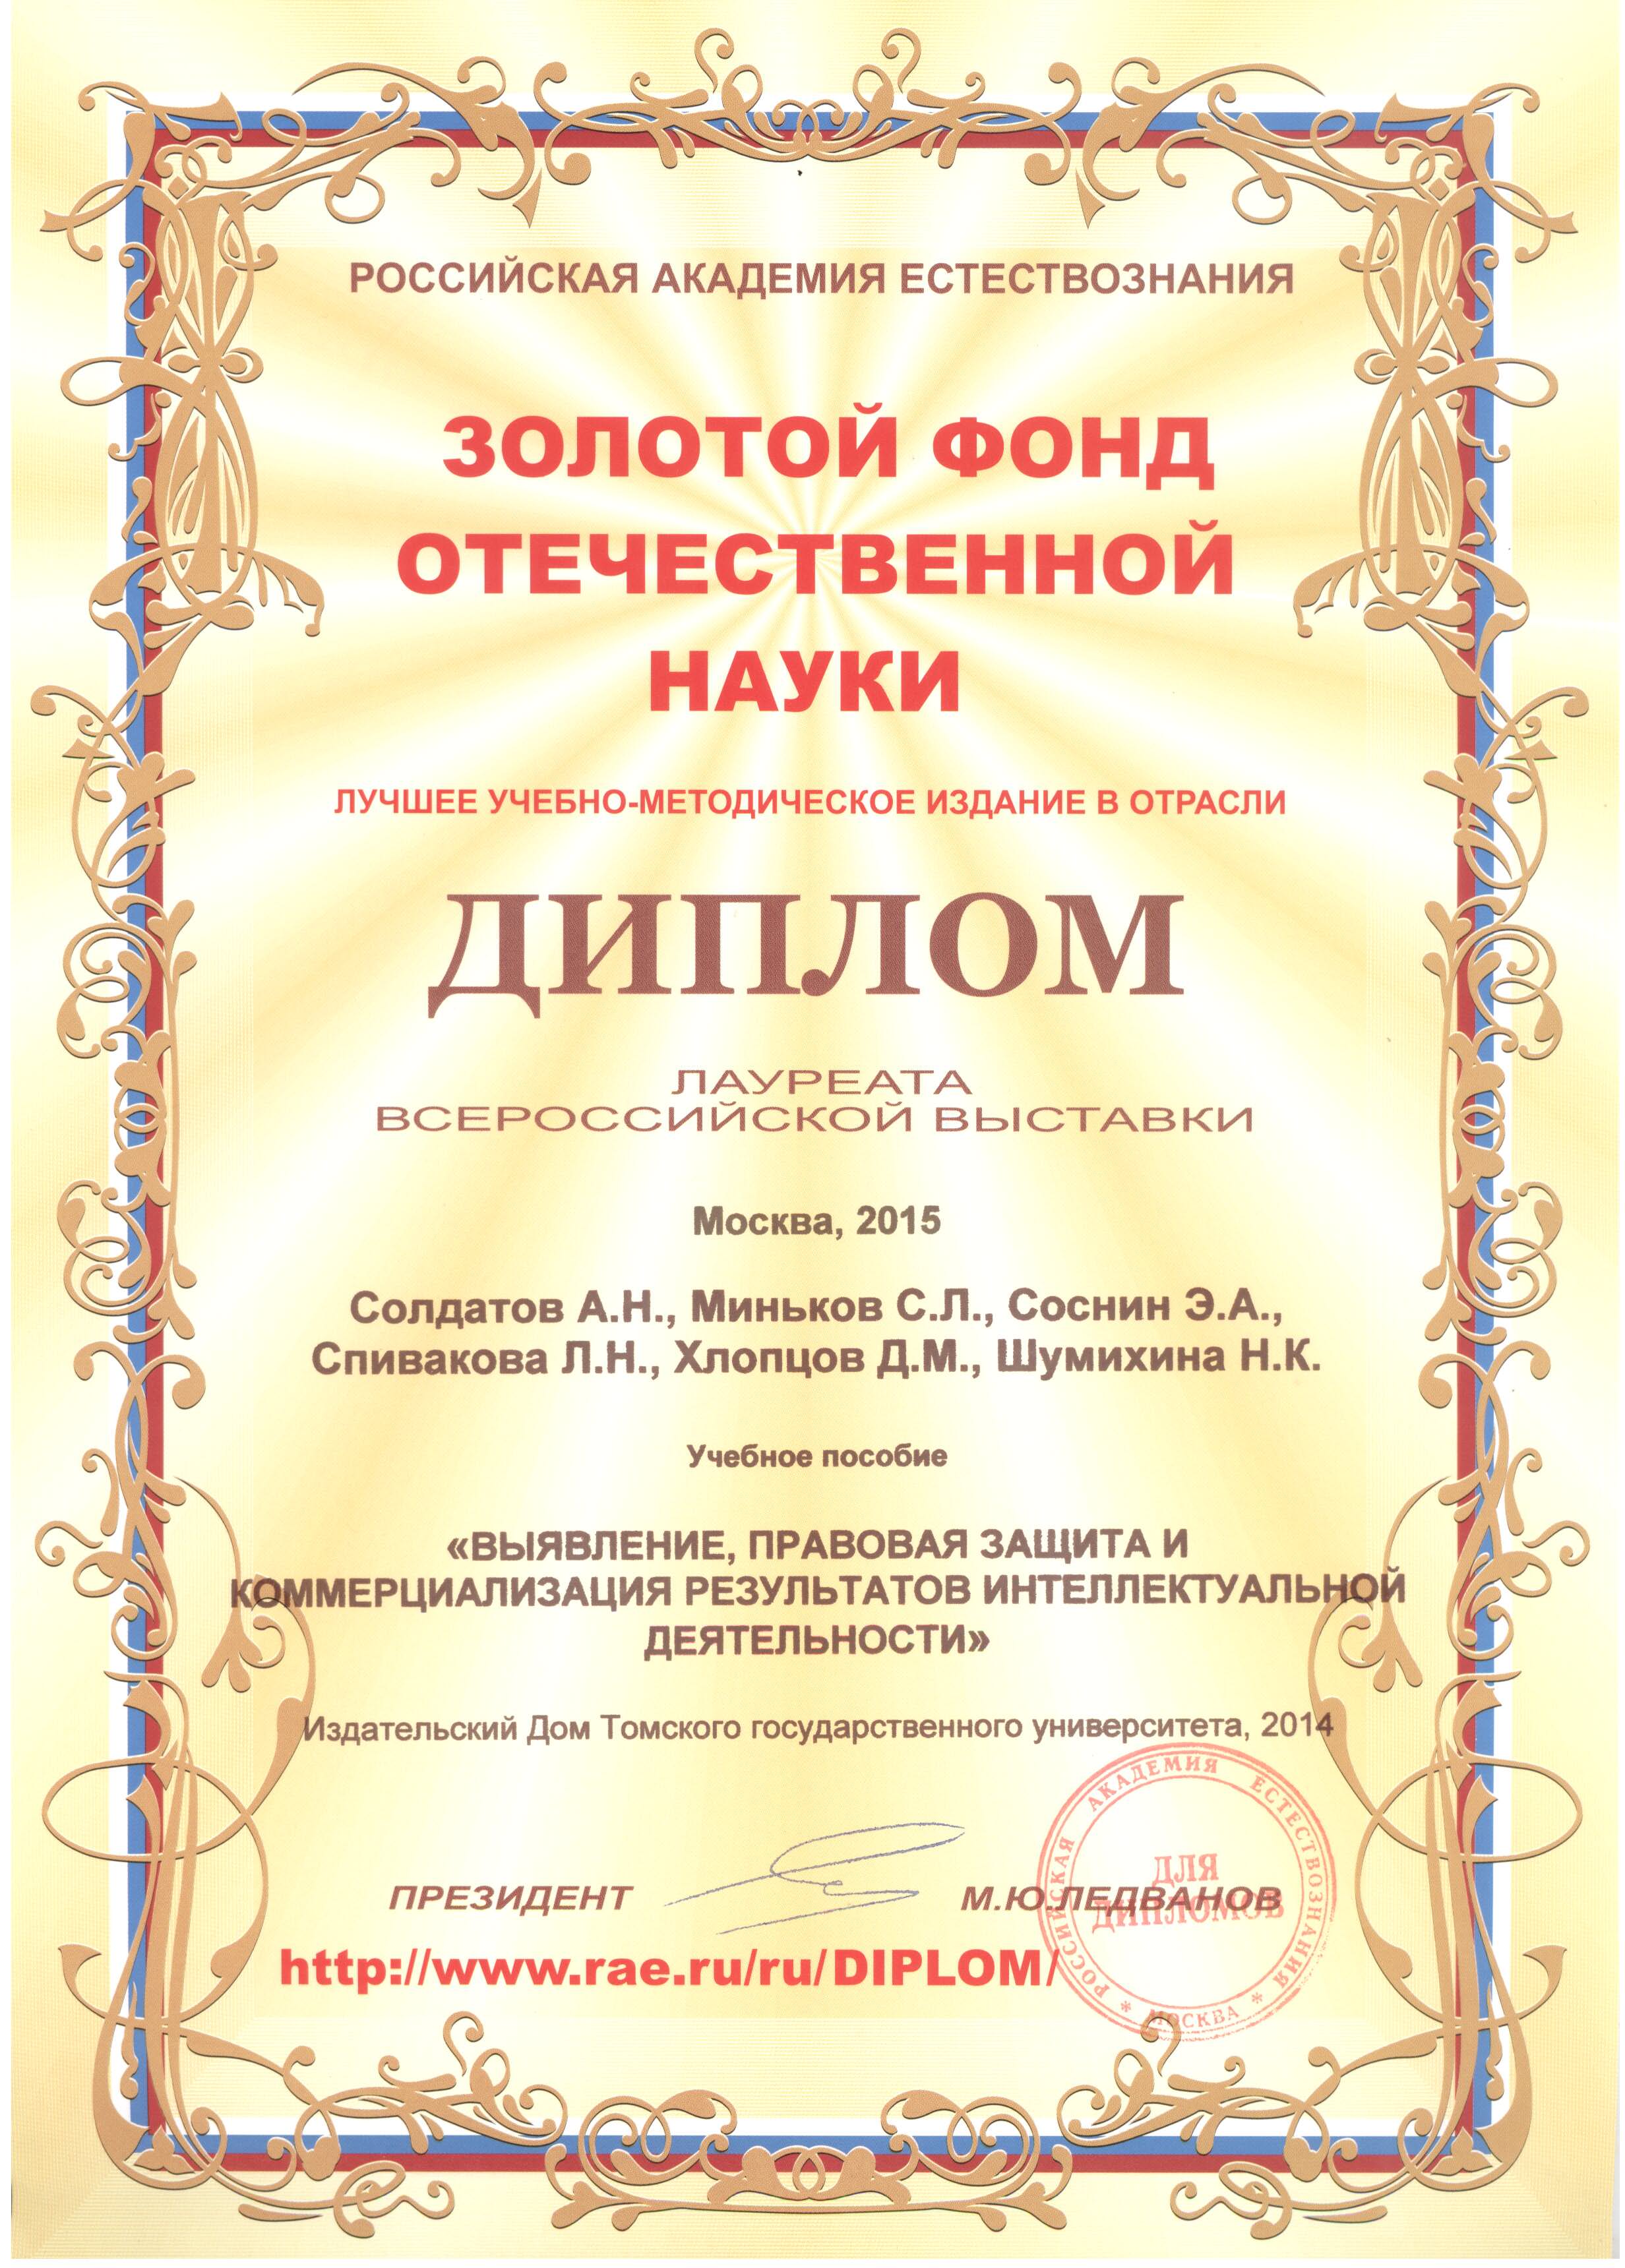 Диплом лауреата Всероссийской выставки